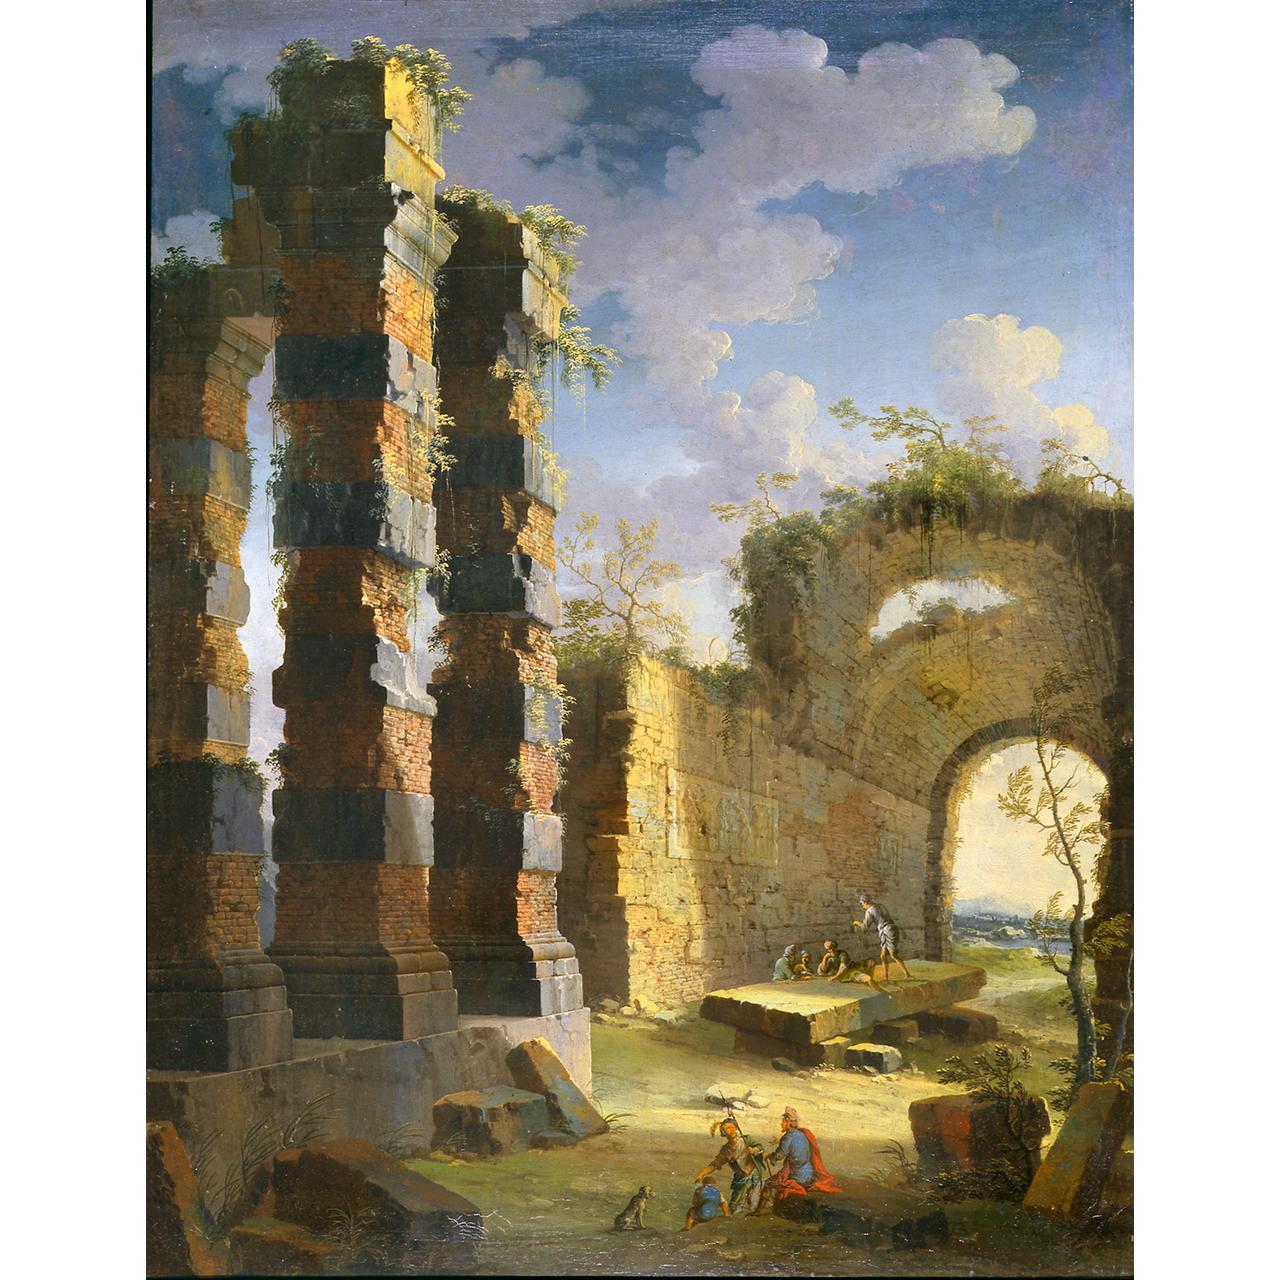 Dipinto: Capriccio con rovine antiche e figure, alba (II)